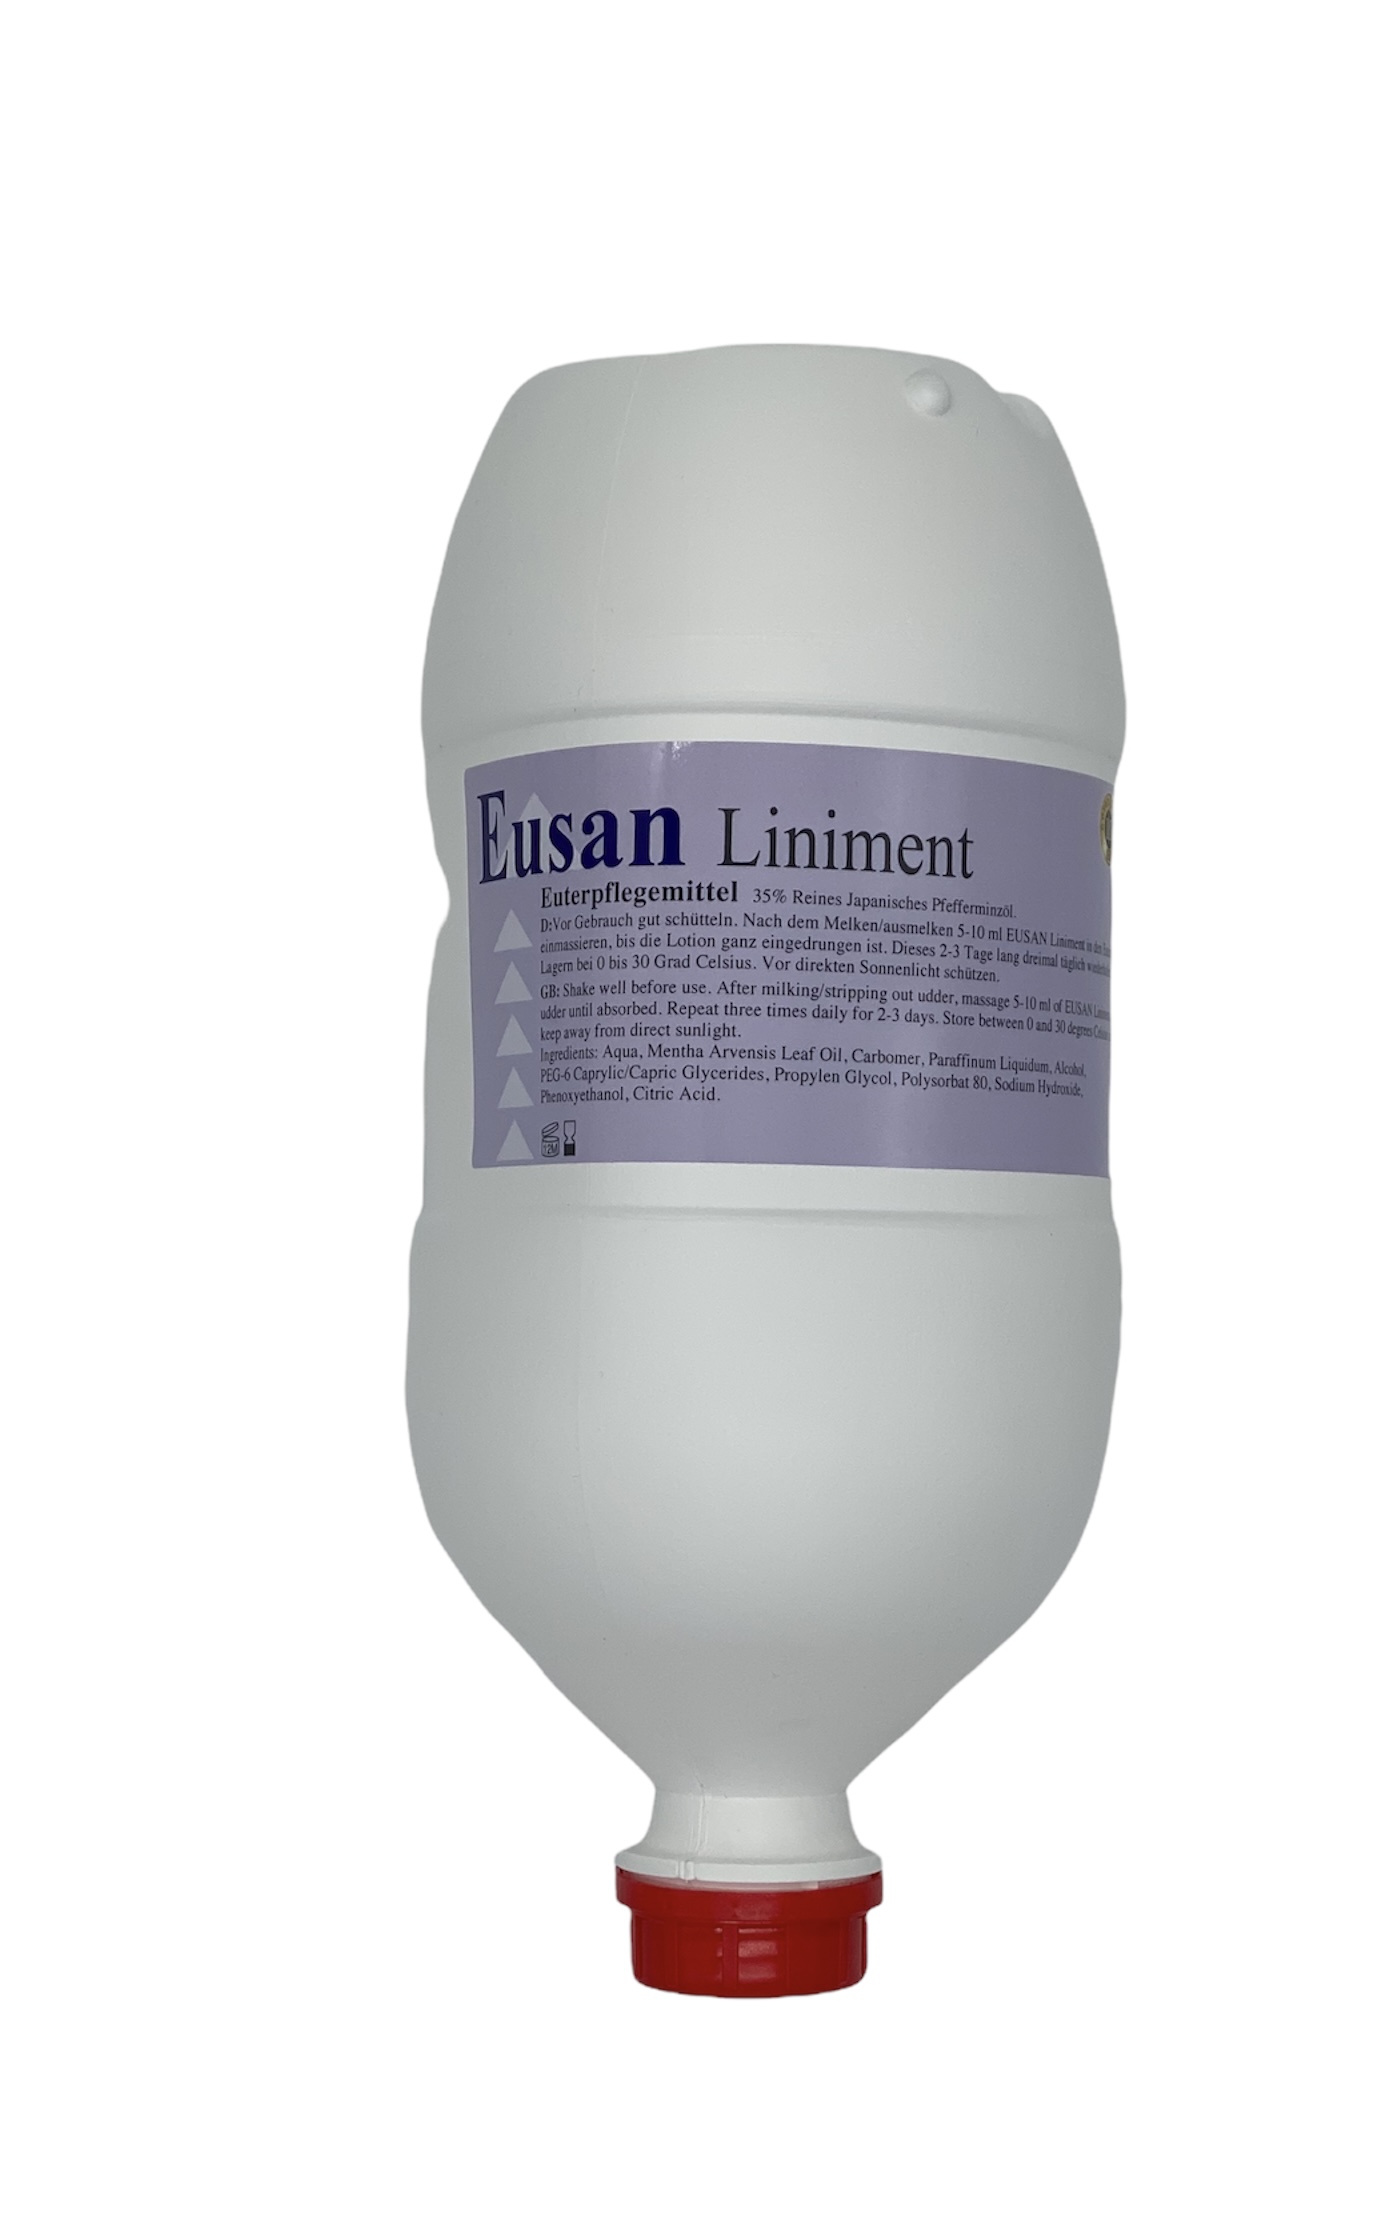 Eusan Liniment Euterpflegemittel "Eusan Bombe" - 2,5 L